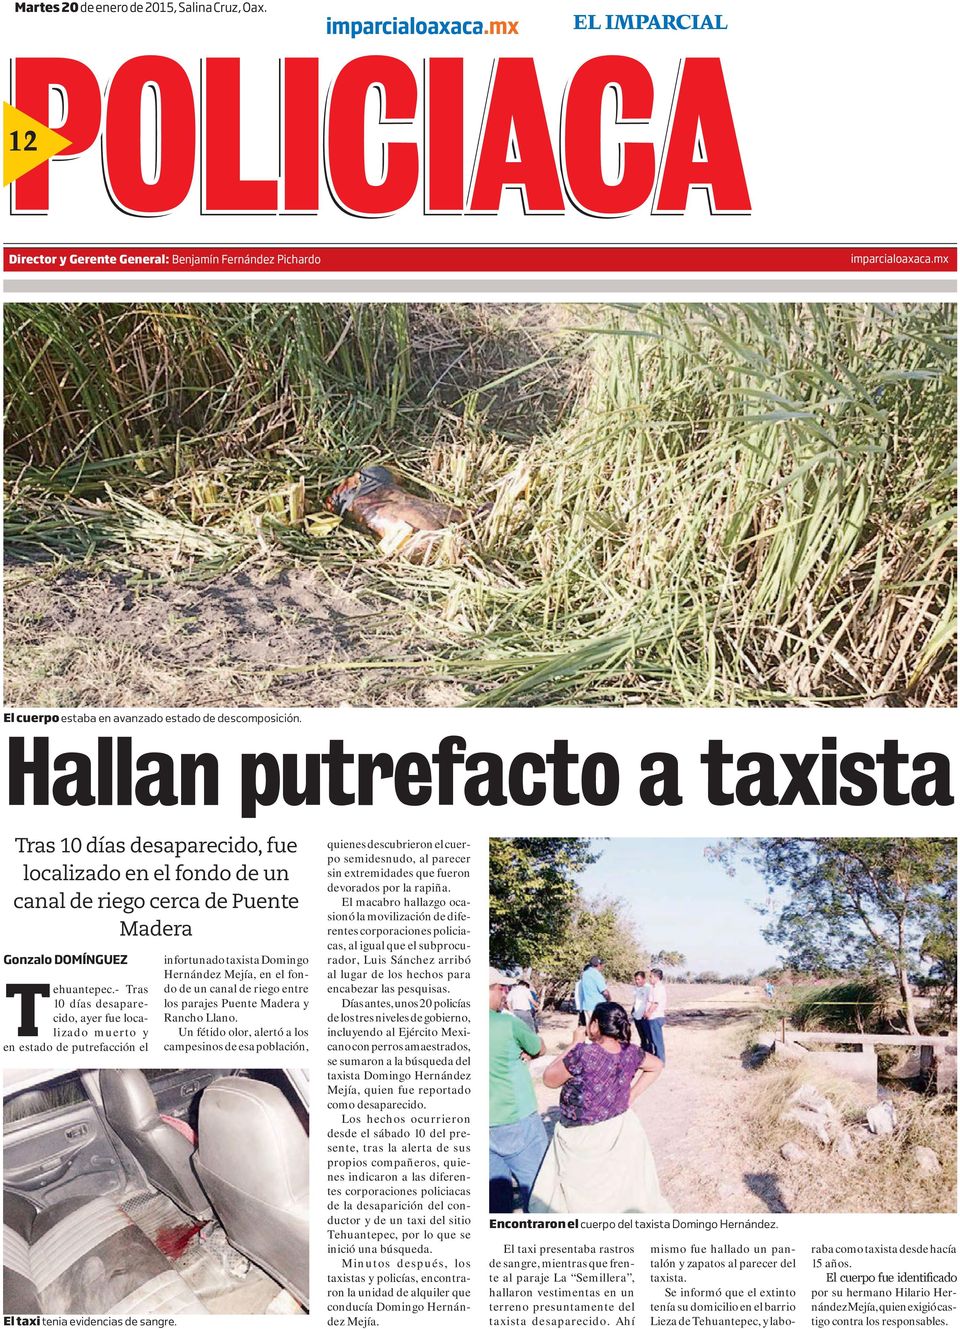 Hallan putrefacto a taxista Tras 10 días desaparecido, fue localizado en el fondo de un canal de riego cerca de Puente Madera Gonzalo DOMÍNGUEZ Tehuantepec.